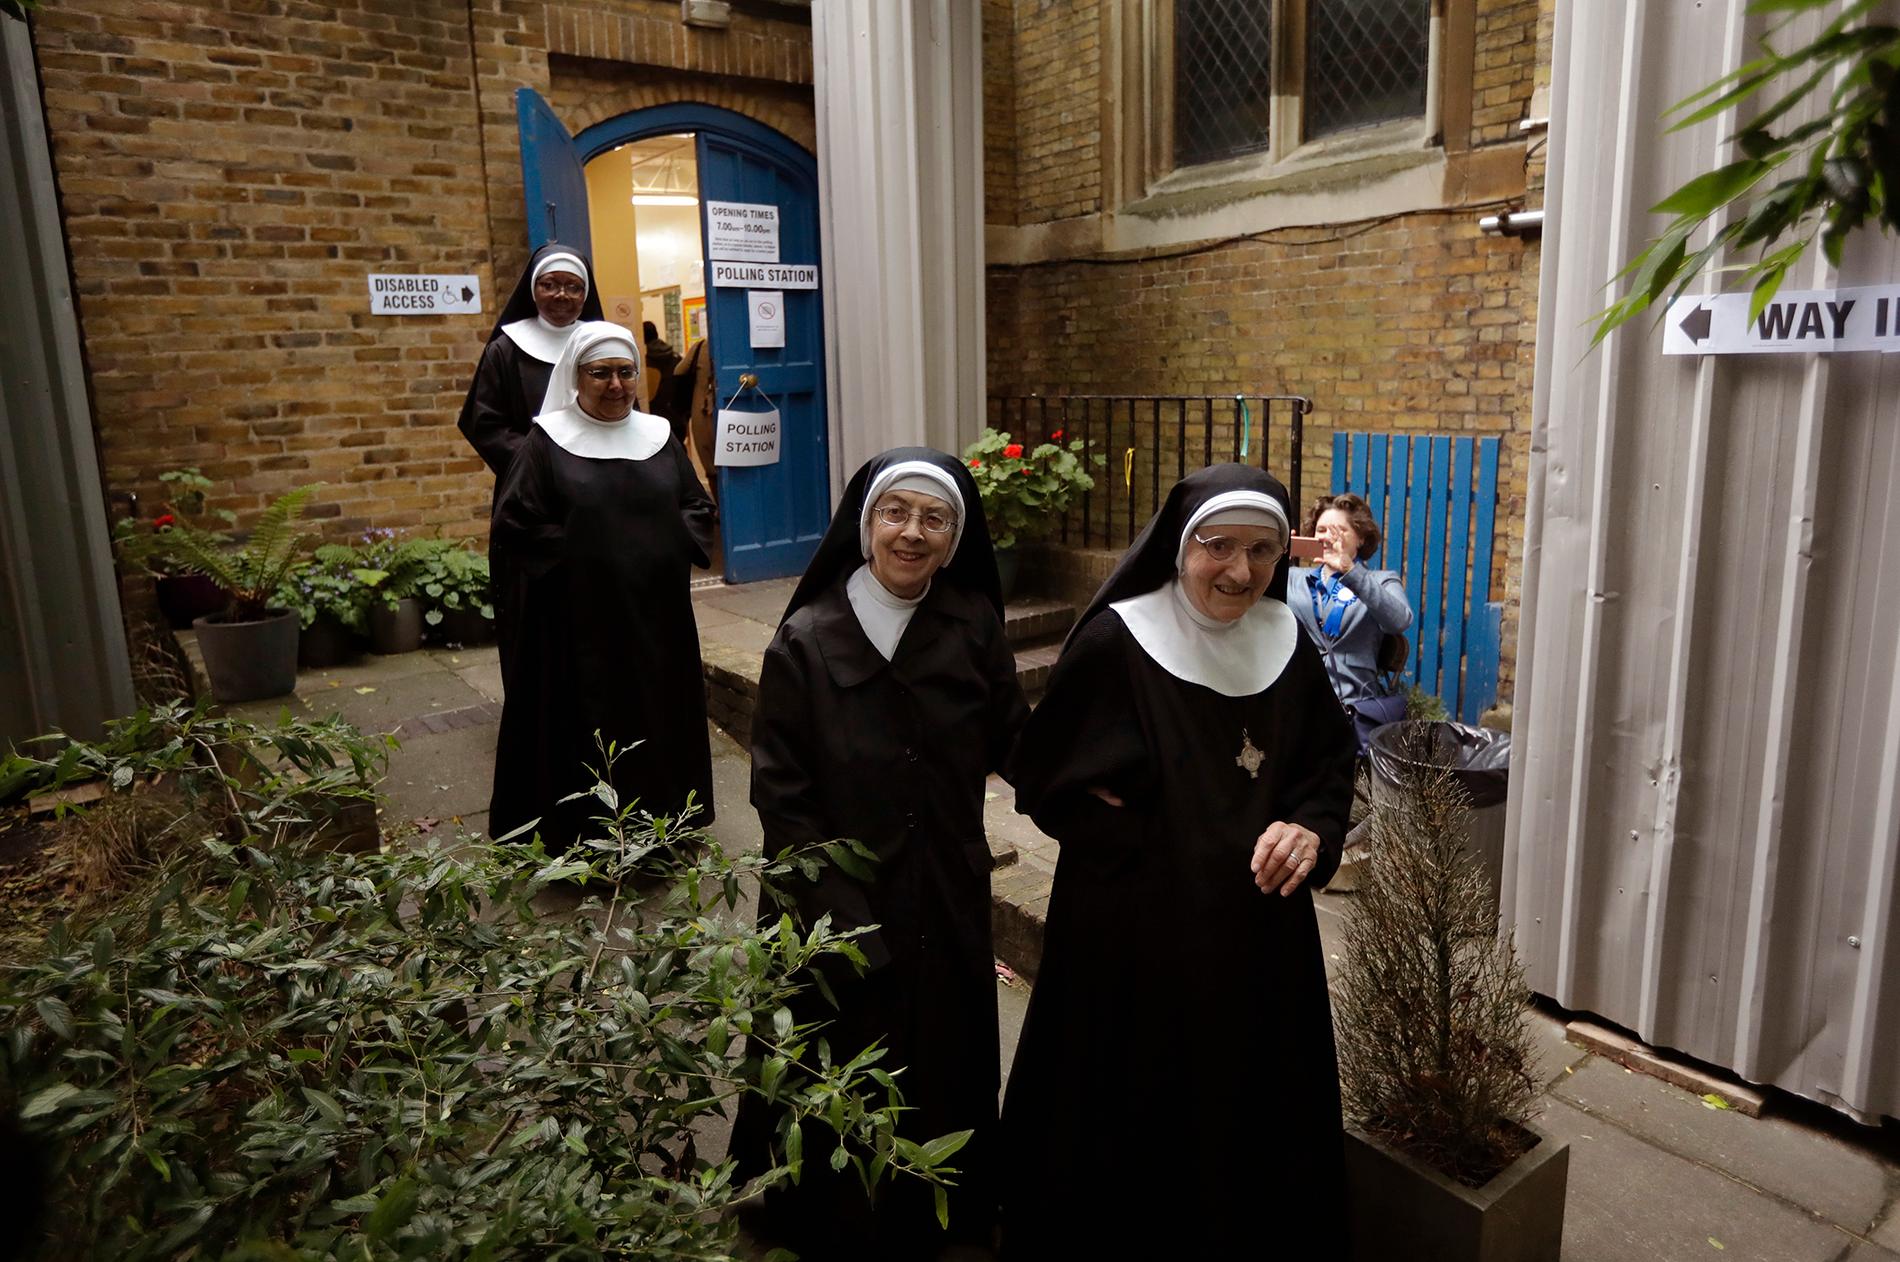 Benedictinenunnorna från Tyburn Convent var upp tidigt och röstade vid St John's Parish Hall, London.